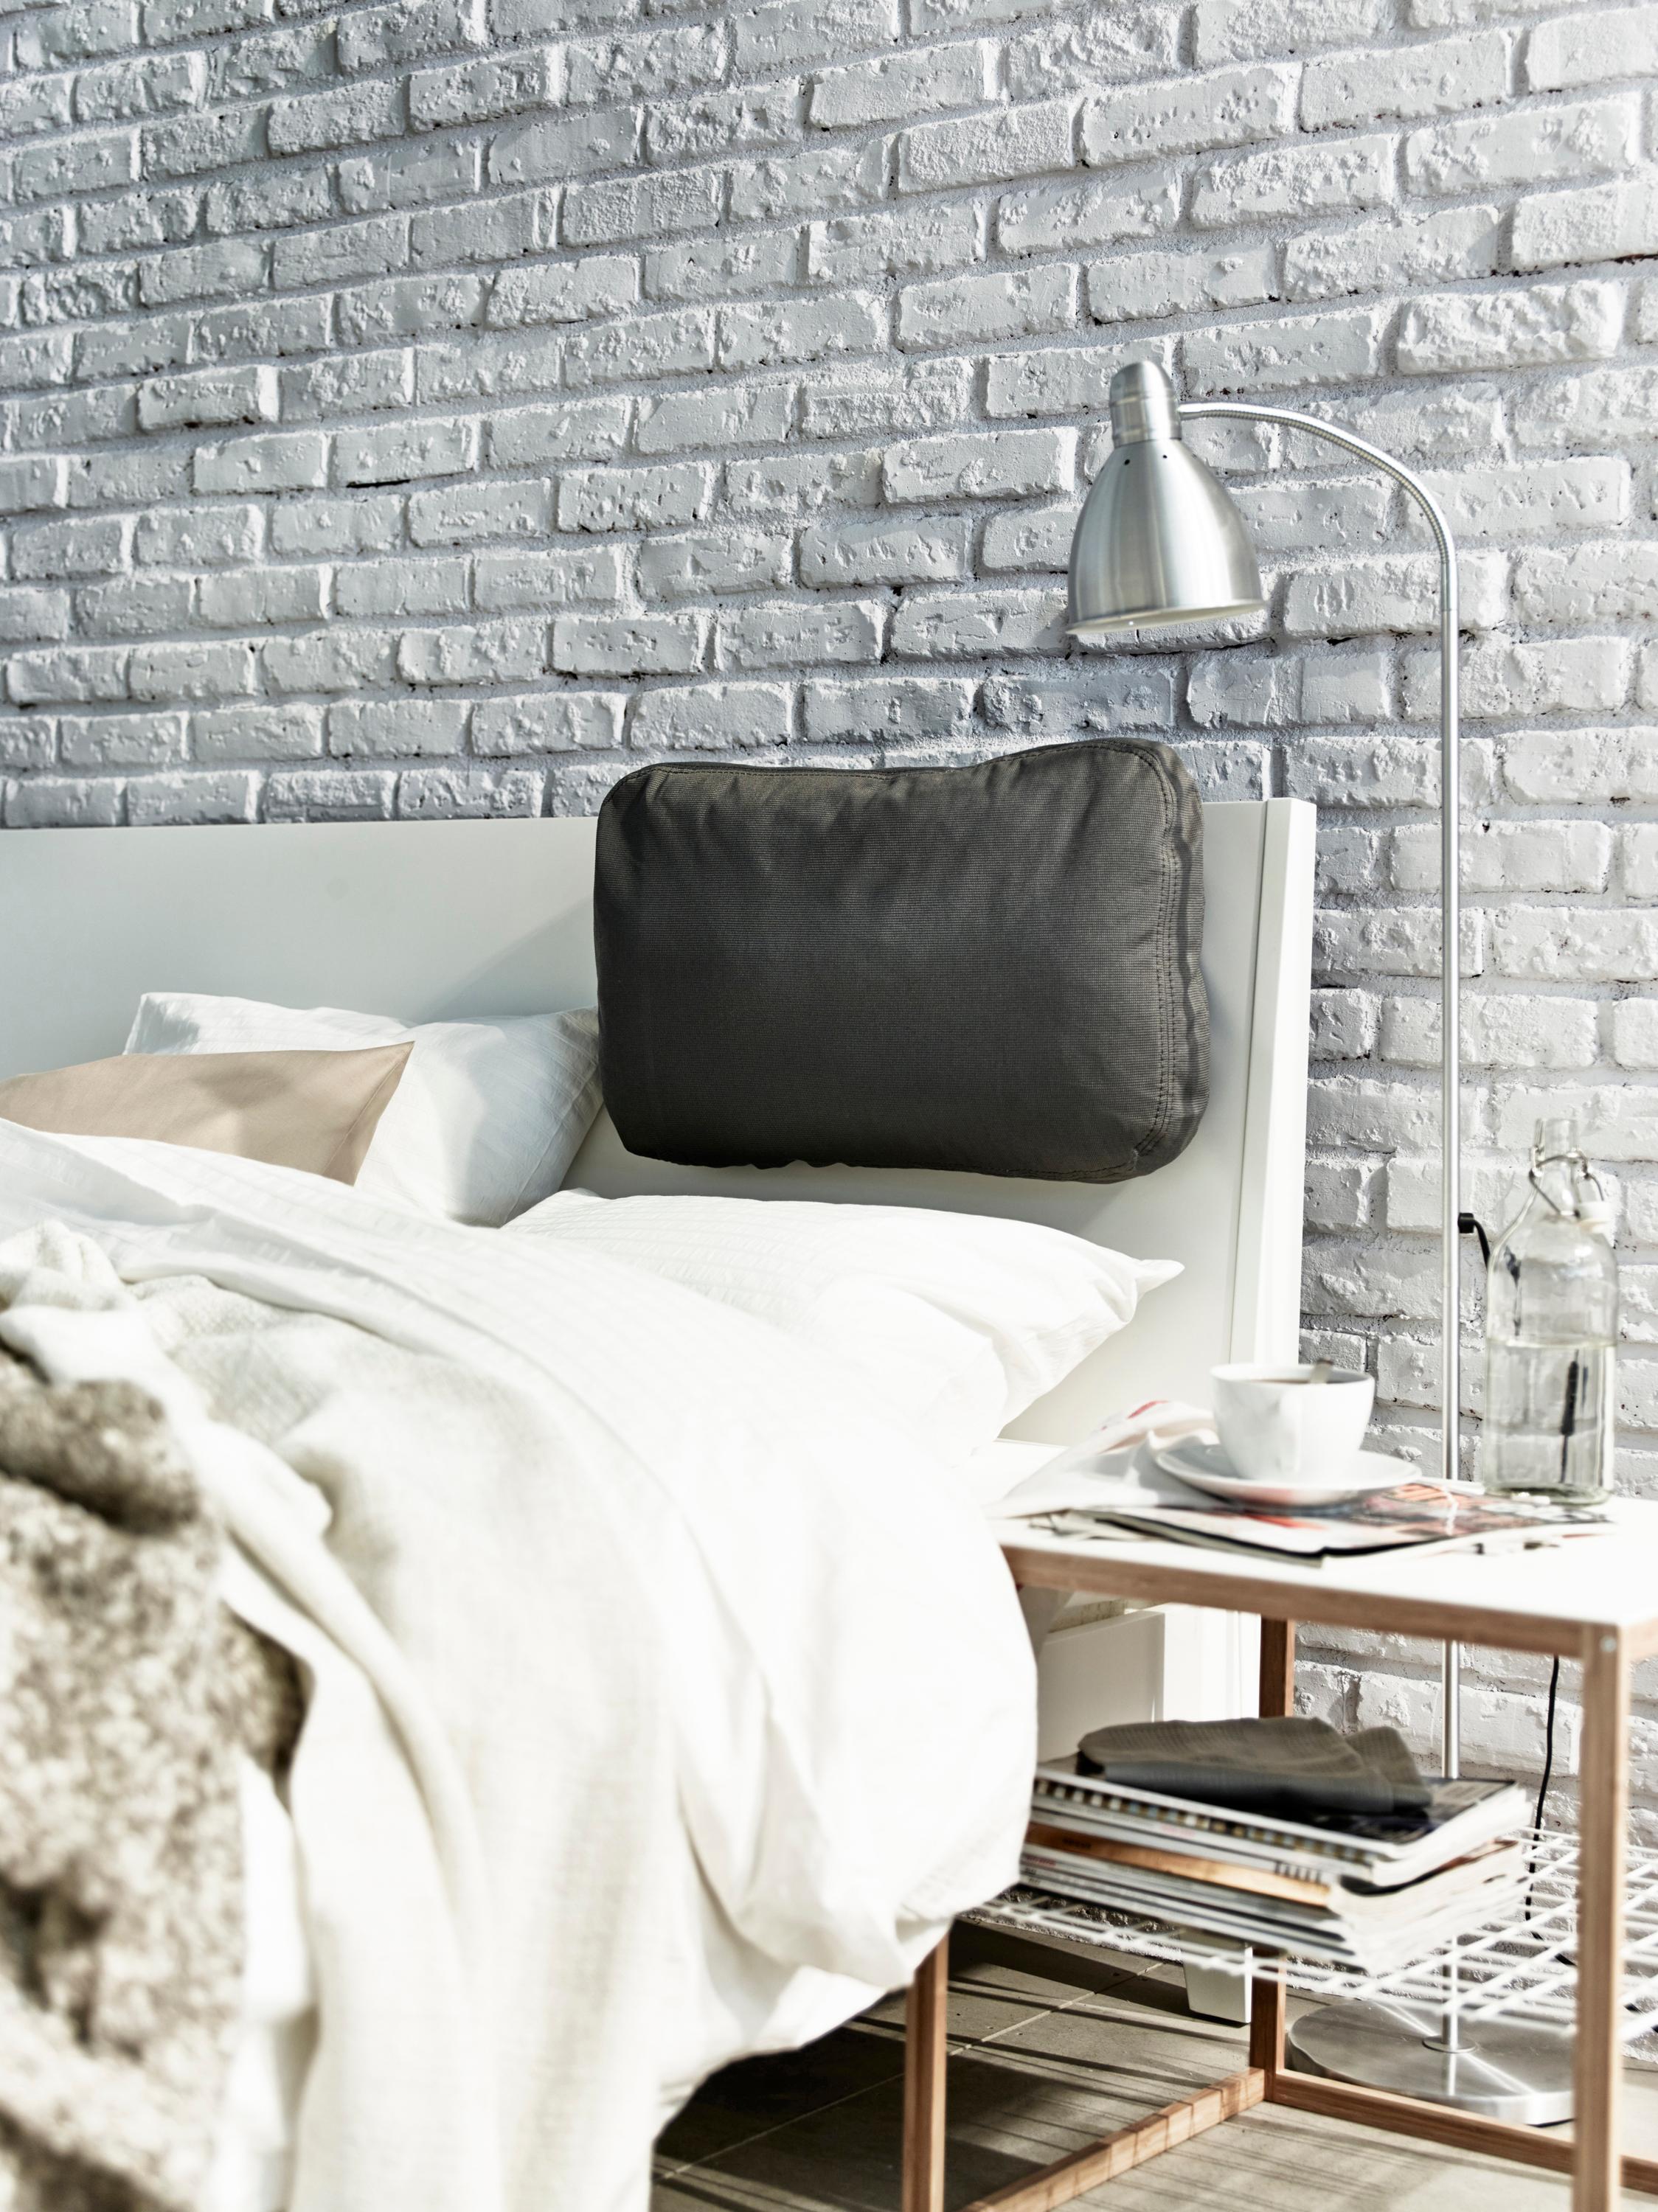 Graue Steinwand im Schlafzimmer #bett #stehlampe #kissen #ikea #steinwand #grauesteinwand ©Inter IKEA Systems B.V.